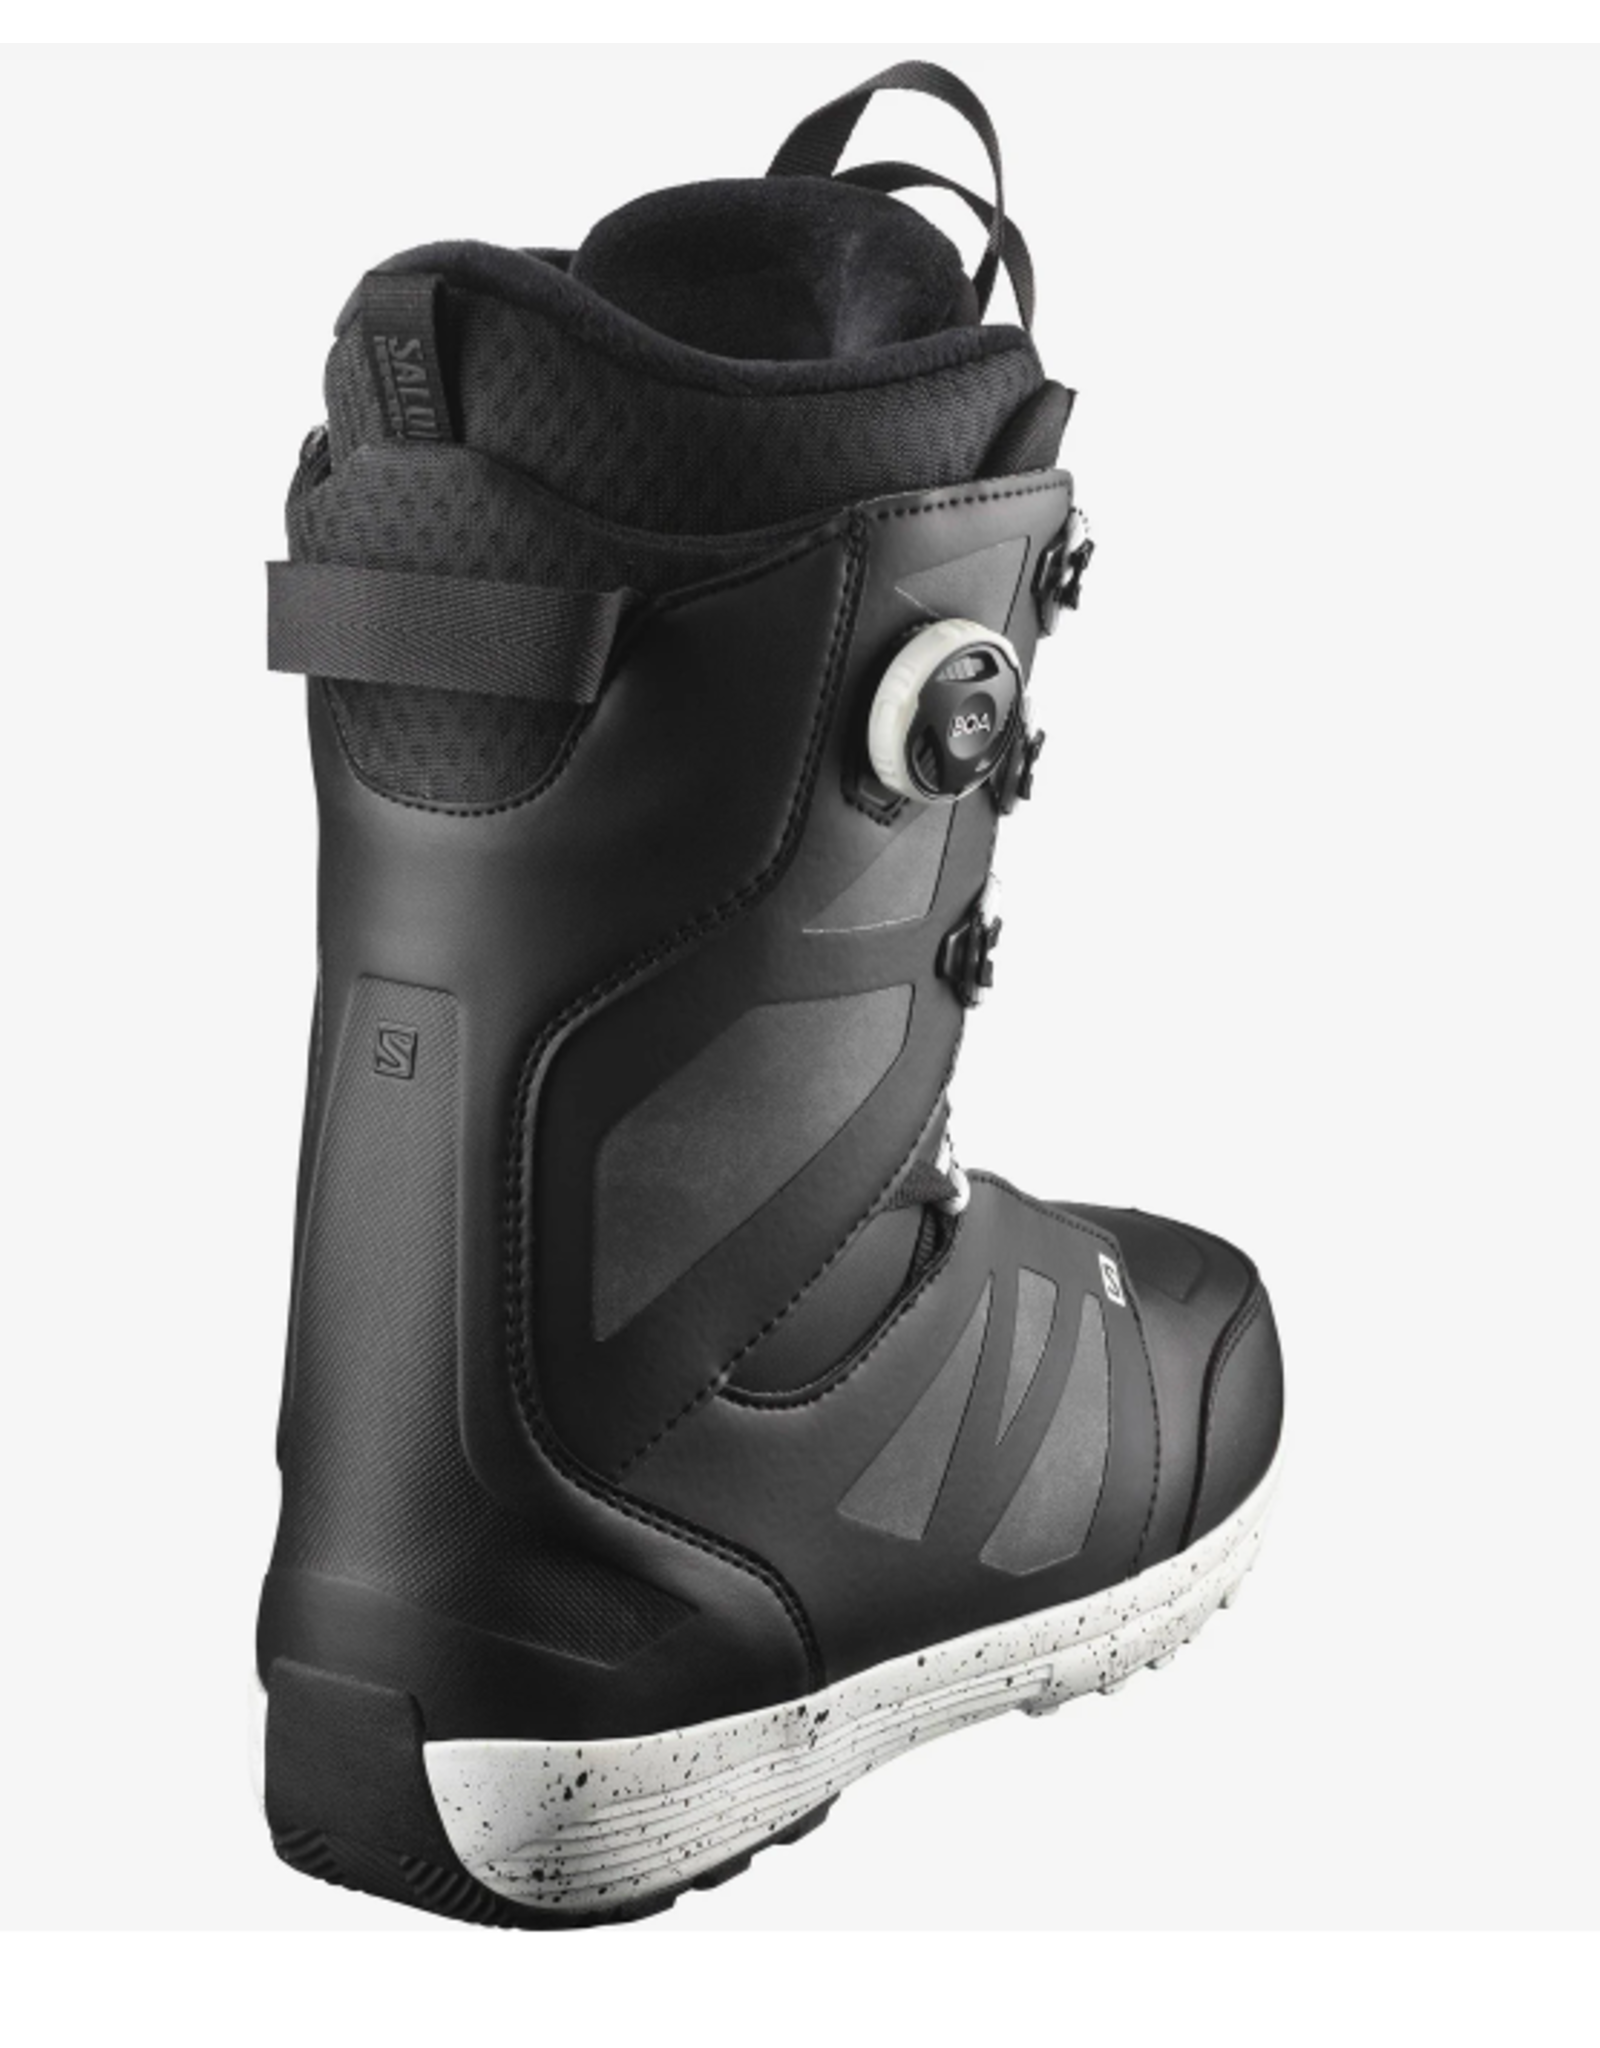 Salomon Men's Launch Lace SJ Boa Snowboard Boots Black/White 2022